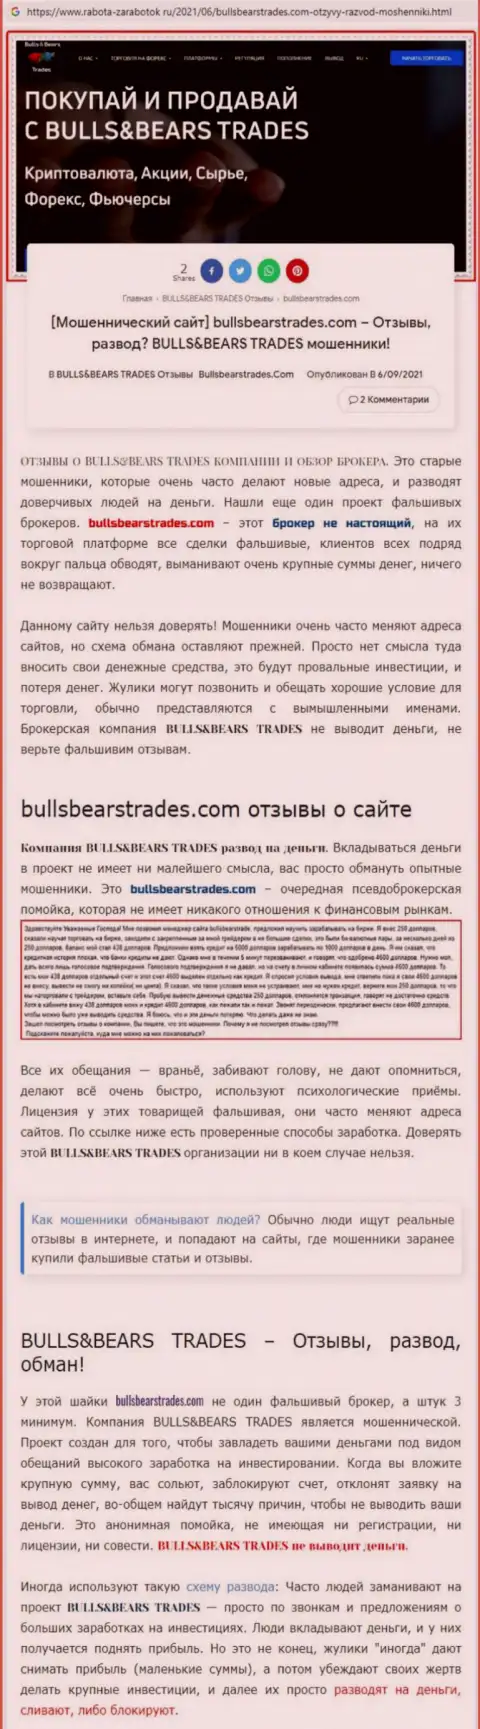 Обзор незаконно действующей компании BullsBearsTrades про то, как разводит лохов